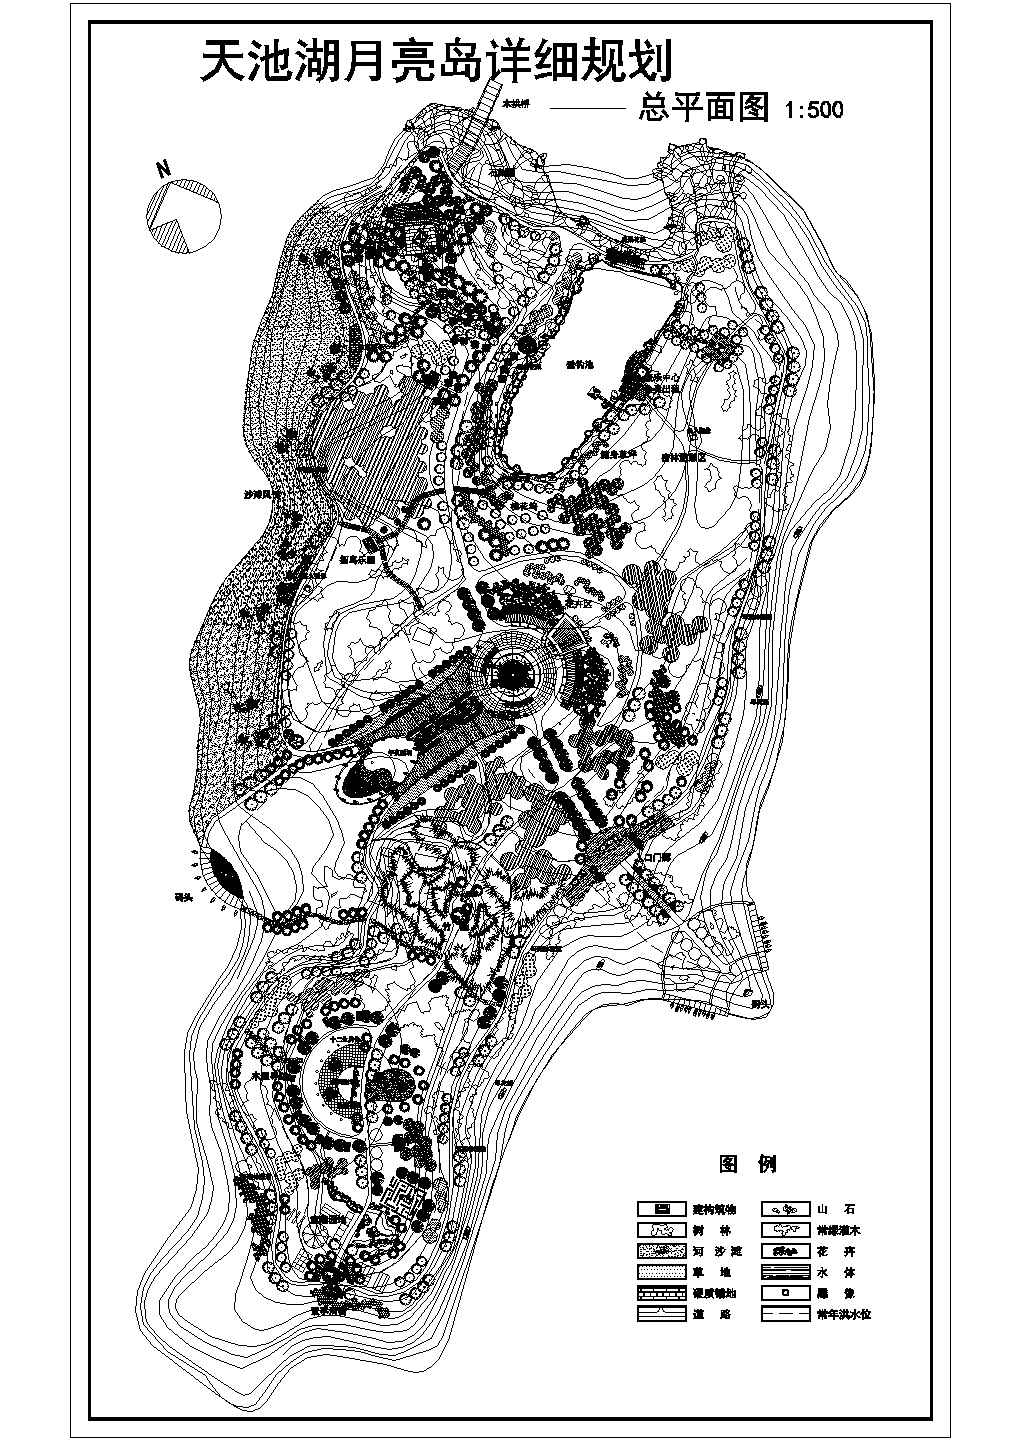 天池湖月亮岛公园景观规划总平面图纸